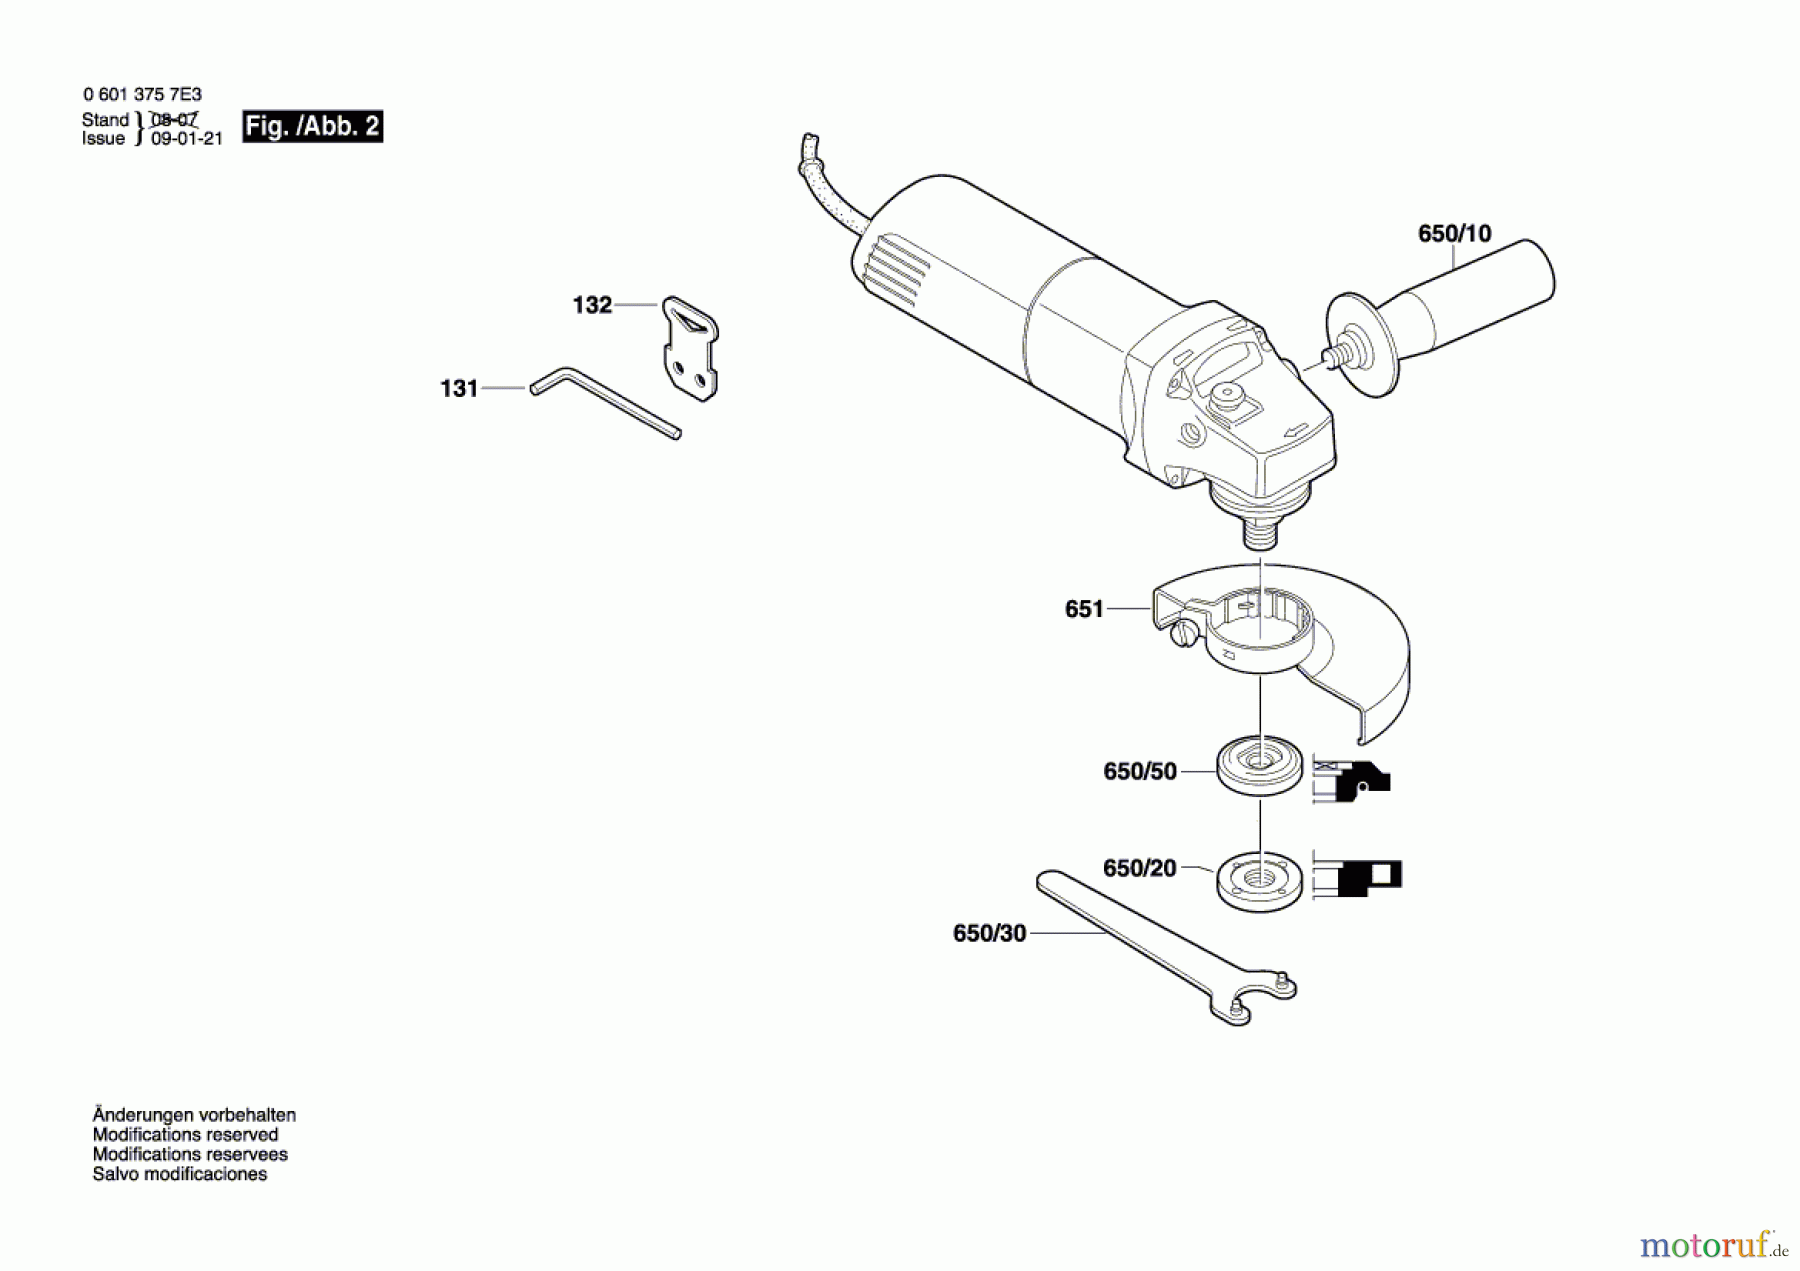  Bosch Werkzeug Winkelschleifer GWS 6-100 E Seite 2